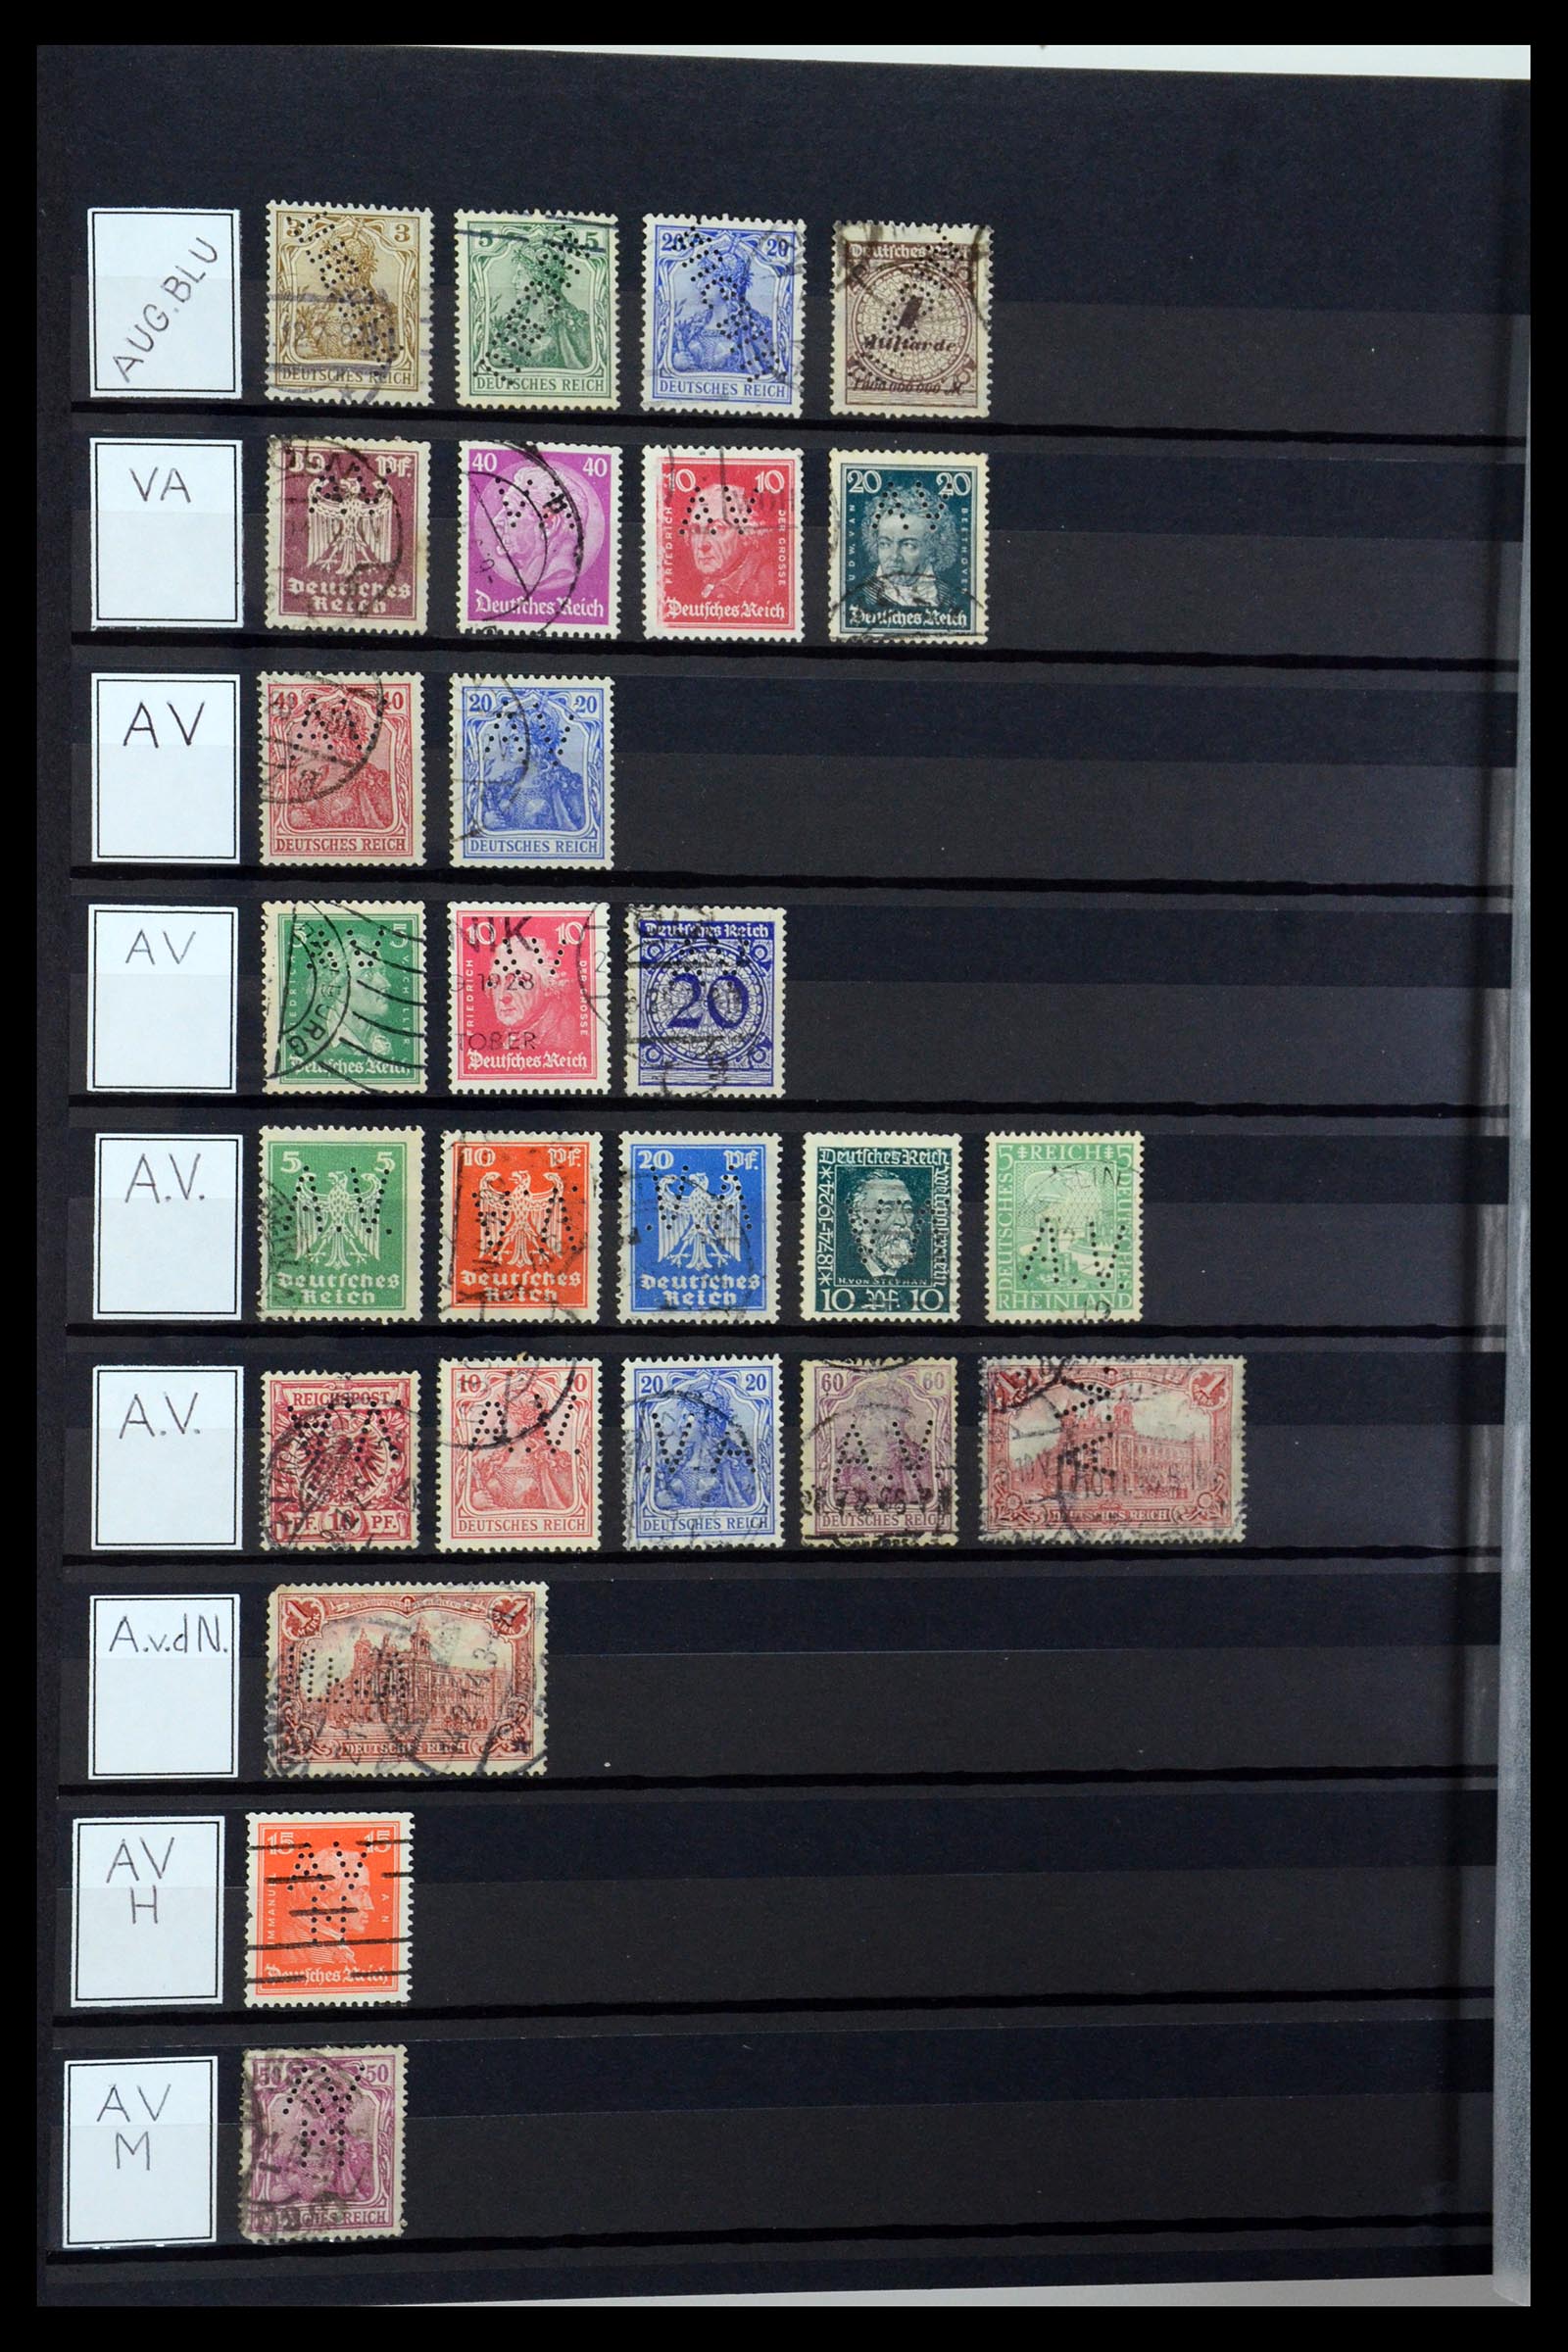 36405 028 - Stamp collection 36405 German Reich perfins 1880-1945.